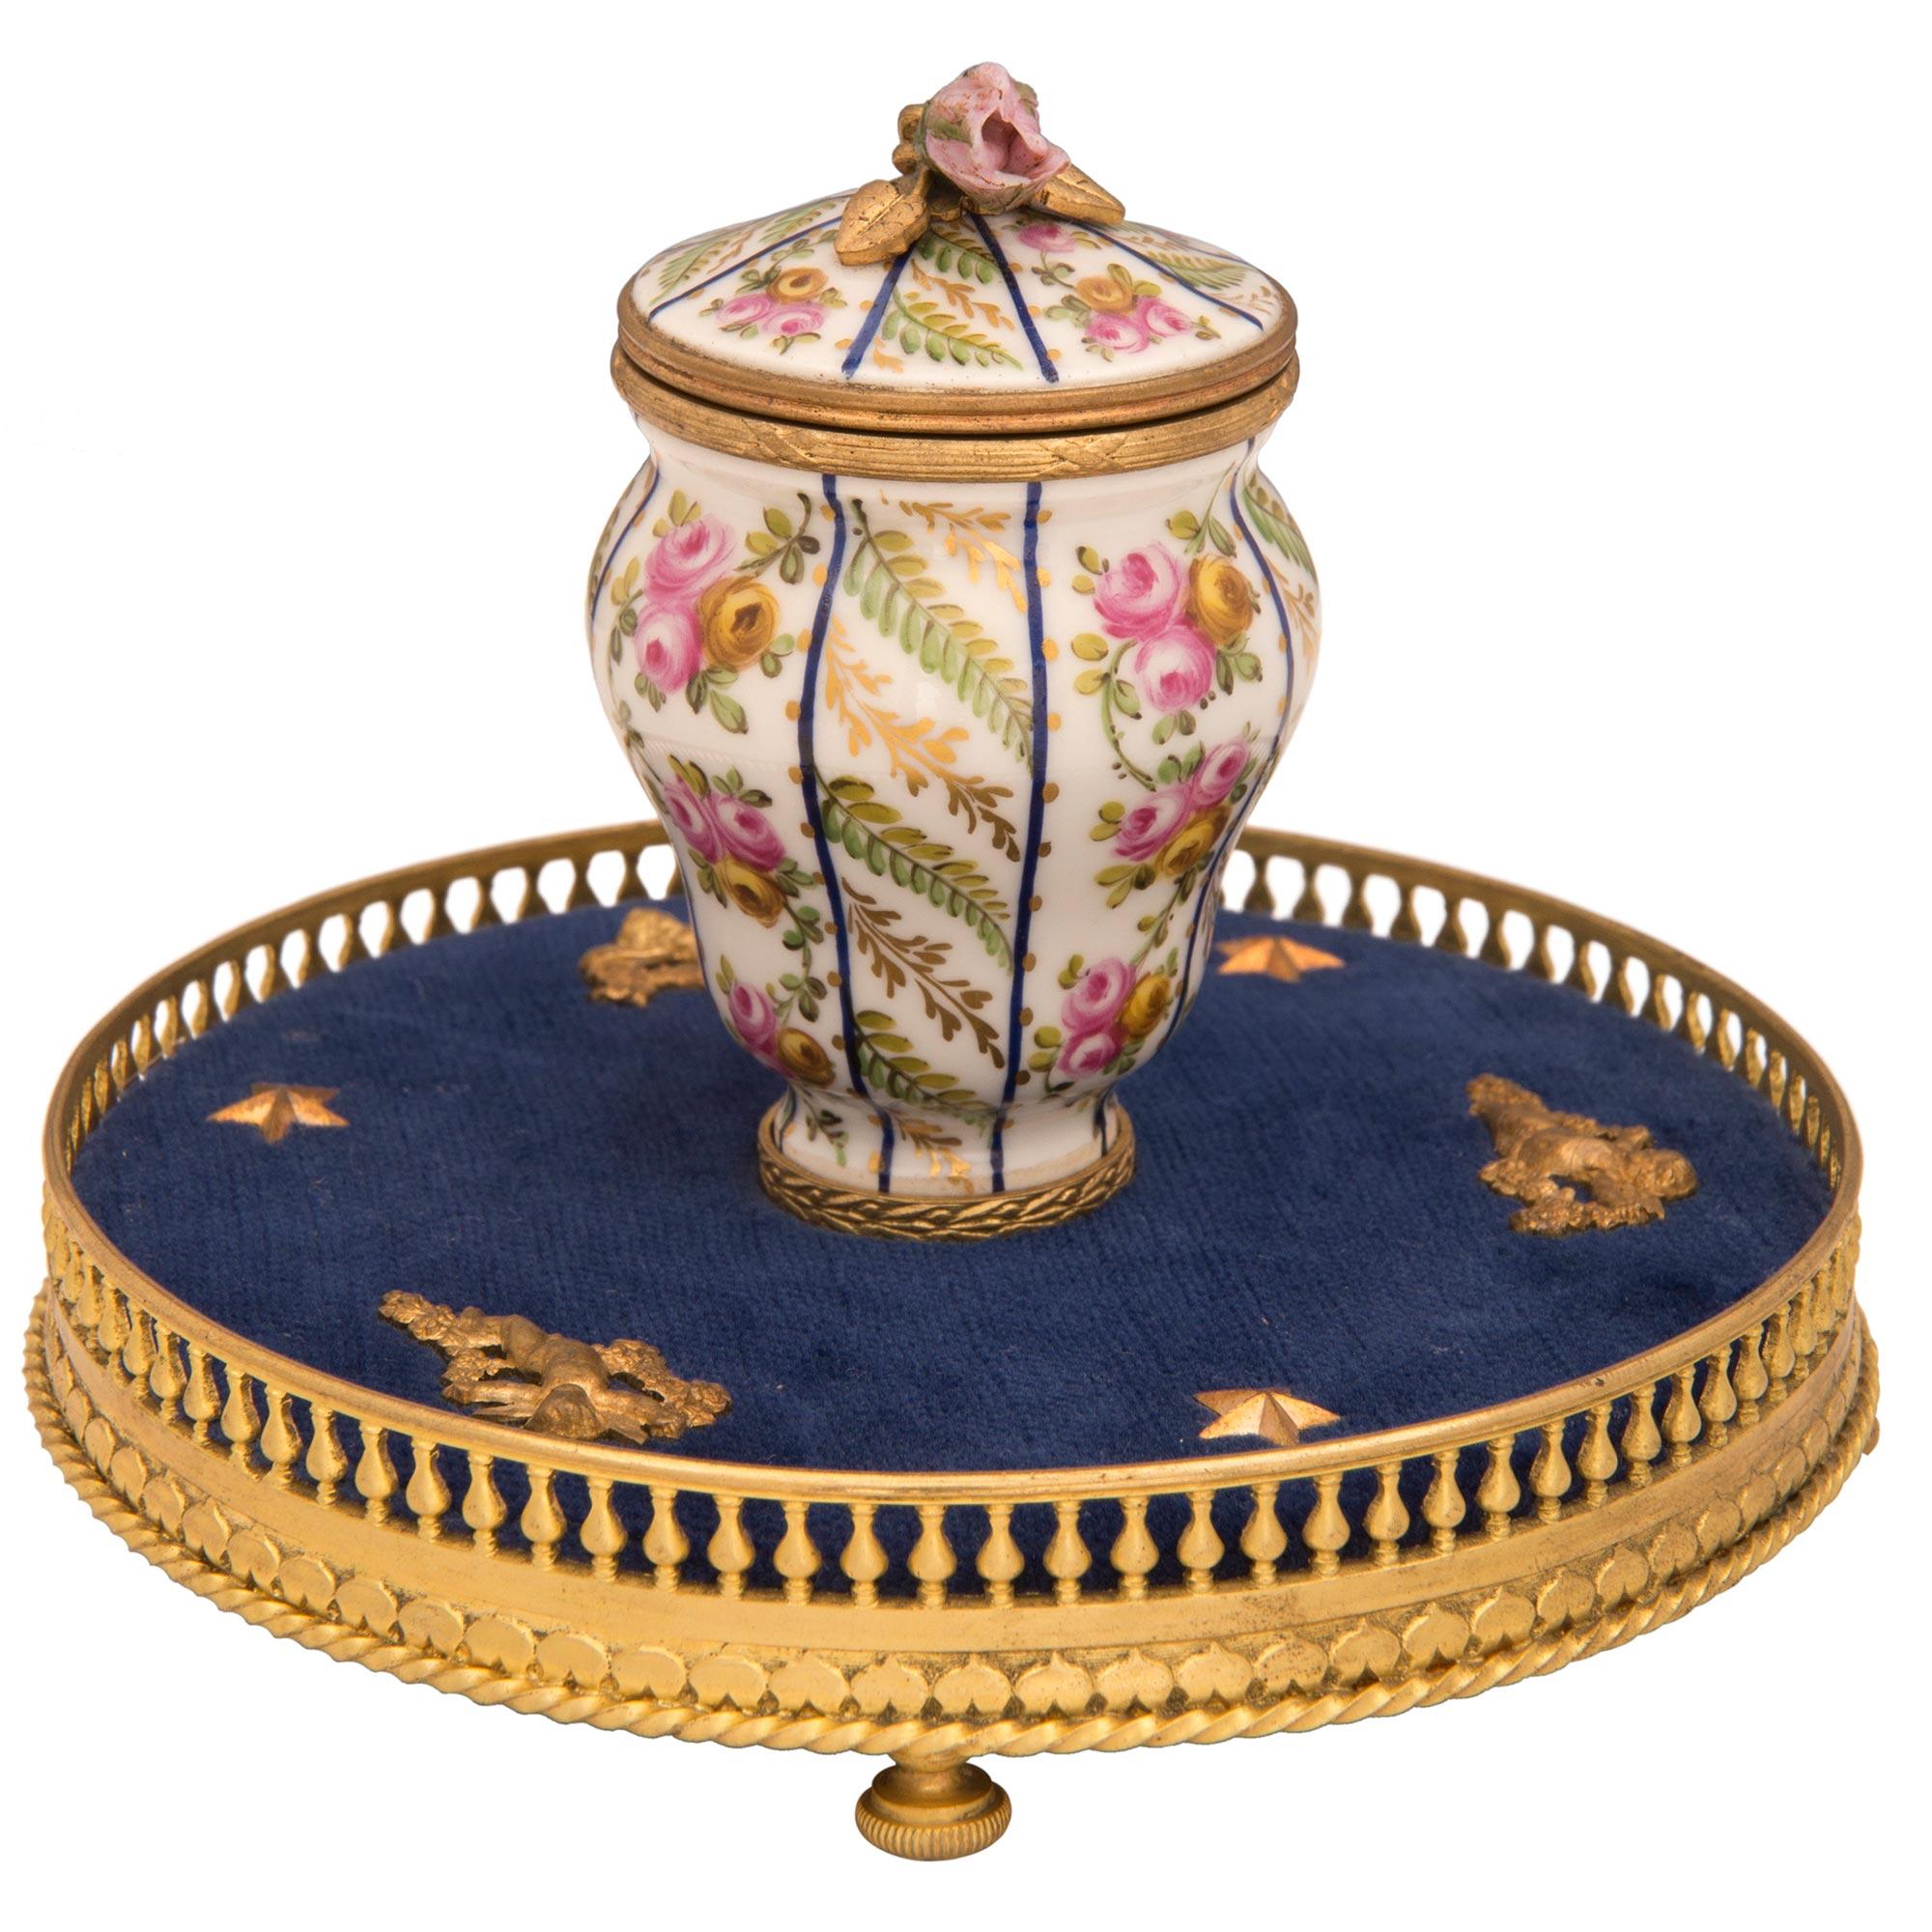 Eine charmante und elegante Französisch 19. Jahrhundert Louis XVI st. Sèvres Porzellan und Ormolu Tintenfass, gestempelt, P.C.G. Das Tintenfass wird von feinen kannelierten Dutt förmigen Füße unter dem schönen Wrap-around-Ormolu Galerie angehoben.